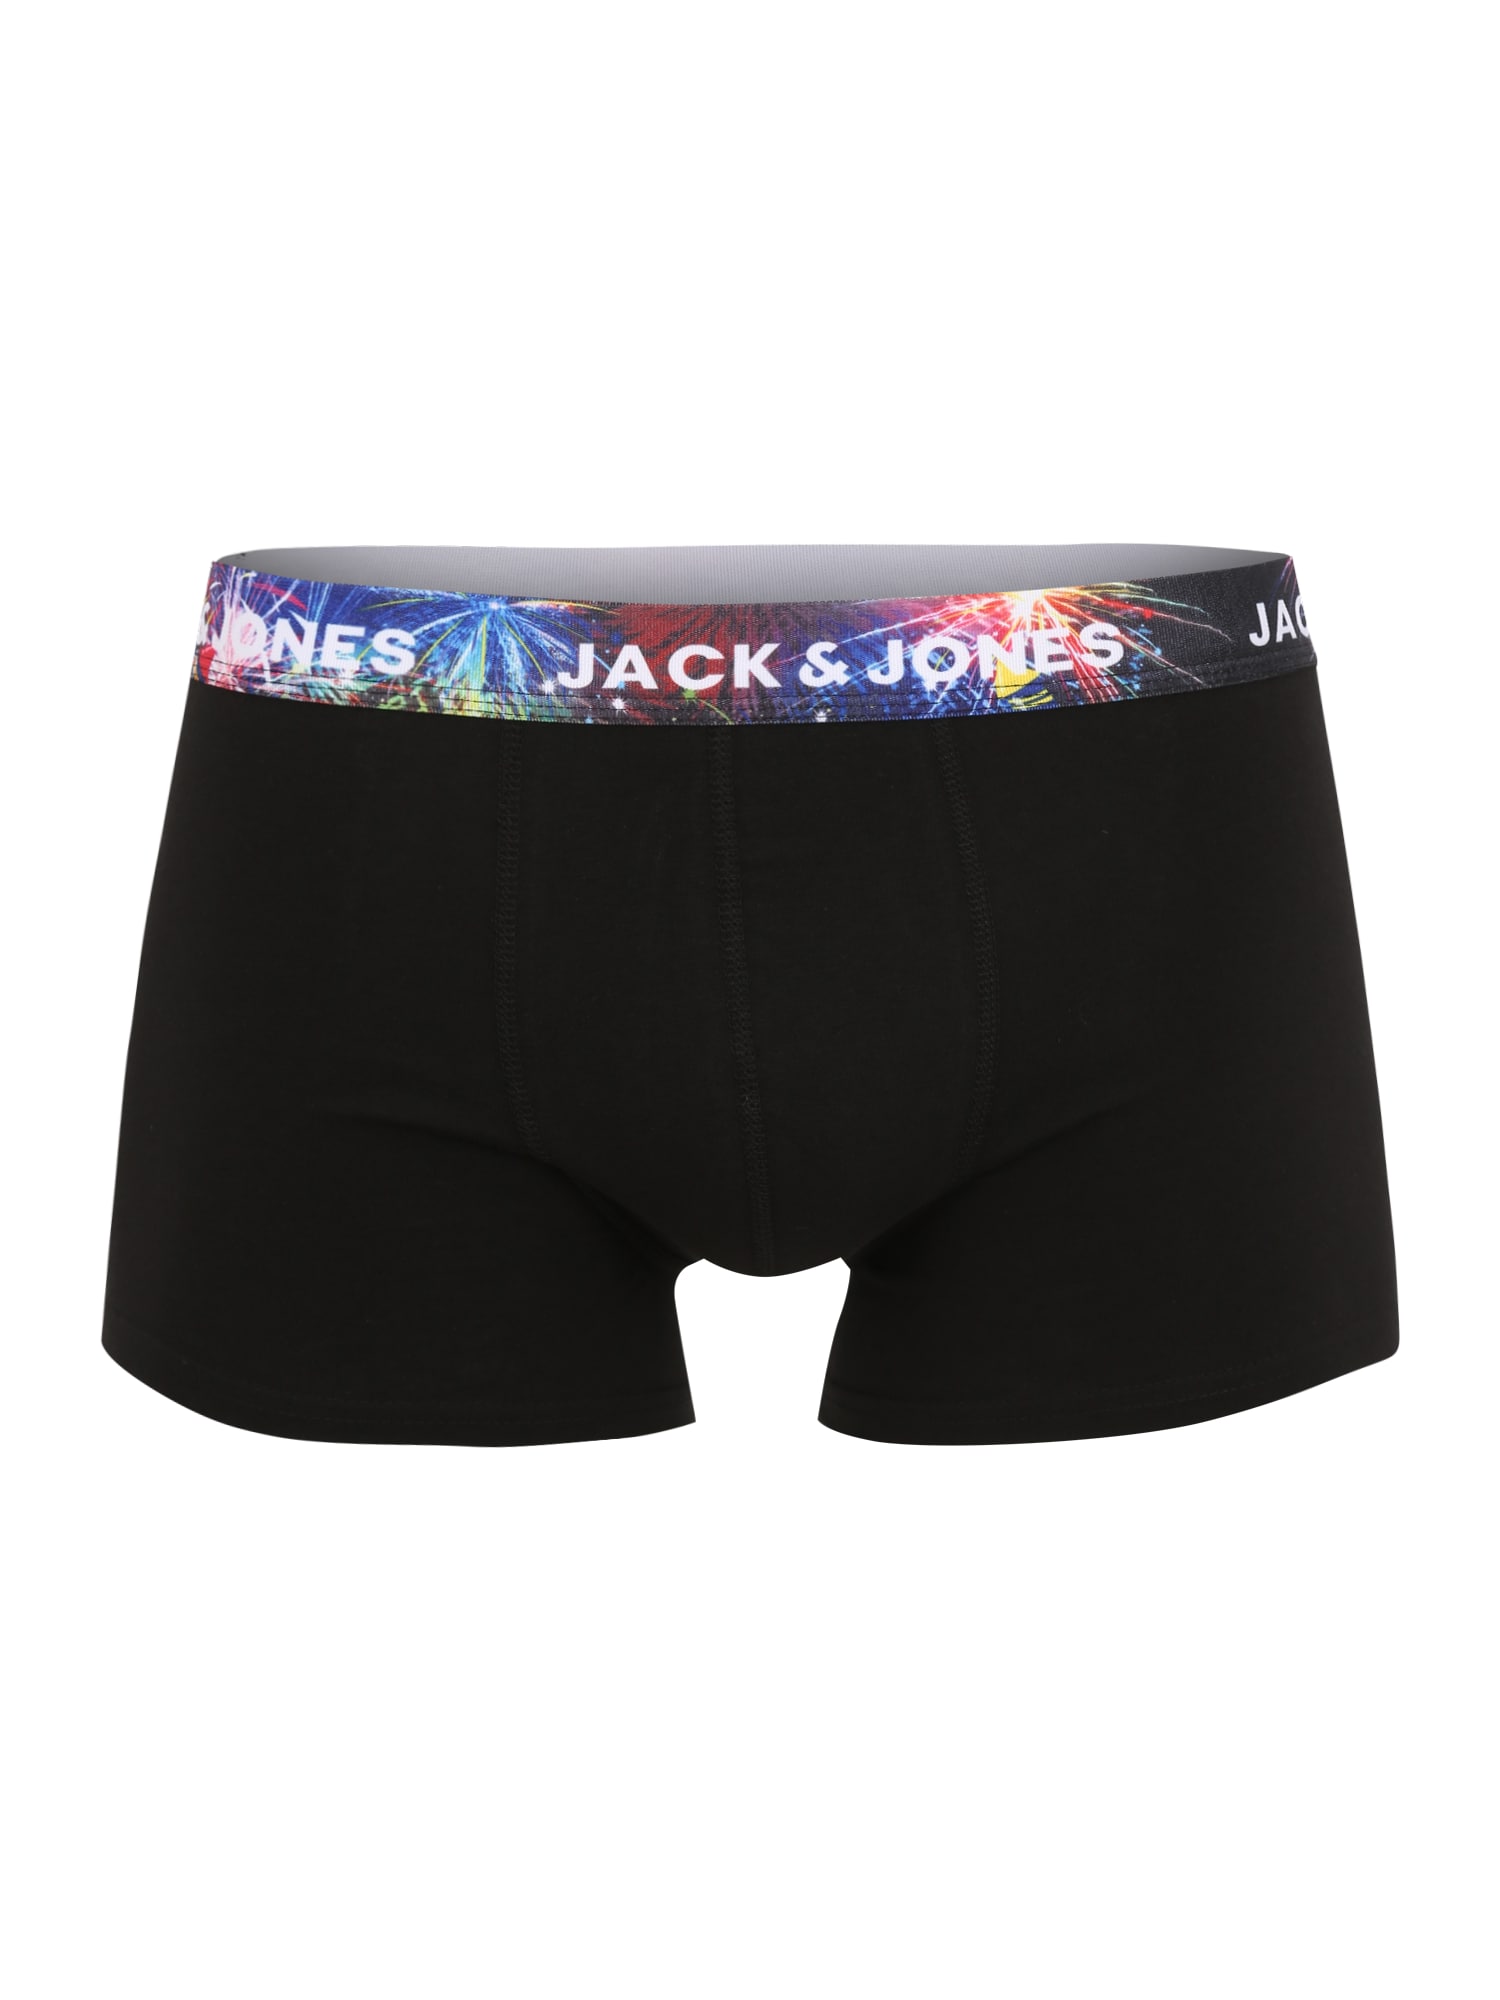 JACK & JONES Boxeralsók  fekete / kék / fehér / piros / sárga